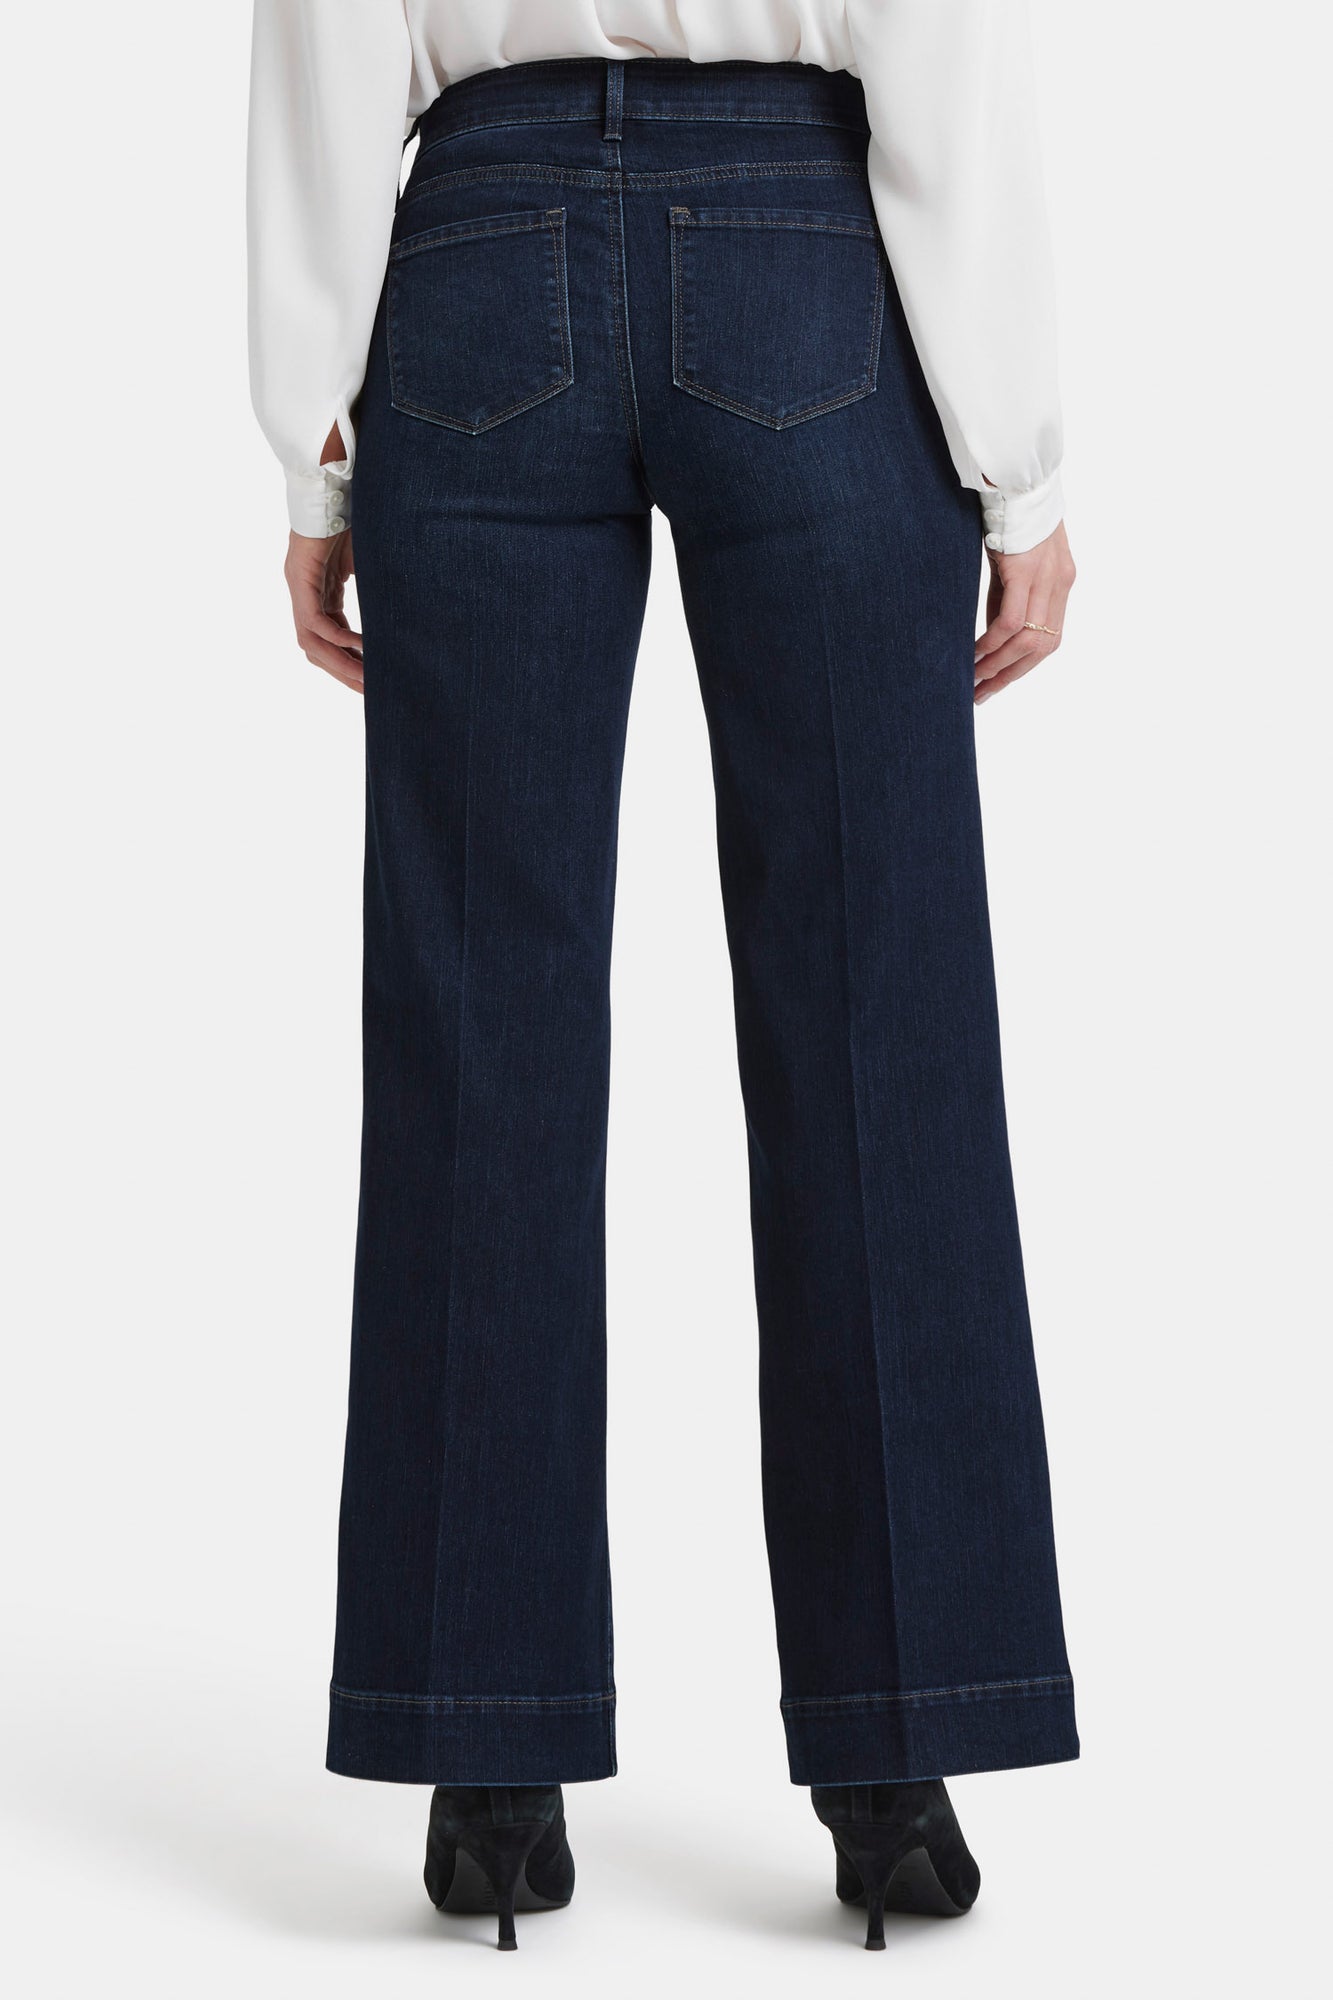 Teresa Trouser Jeans - Rinse  Trouser jeans, Wide leg jeans, Trousers women